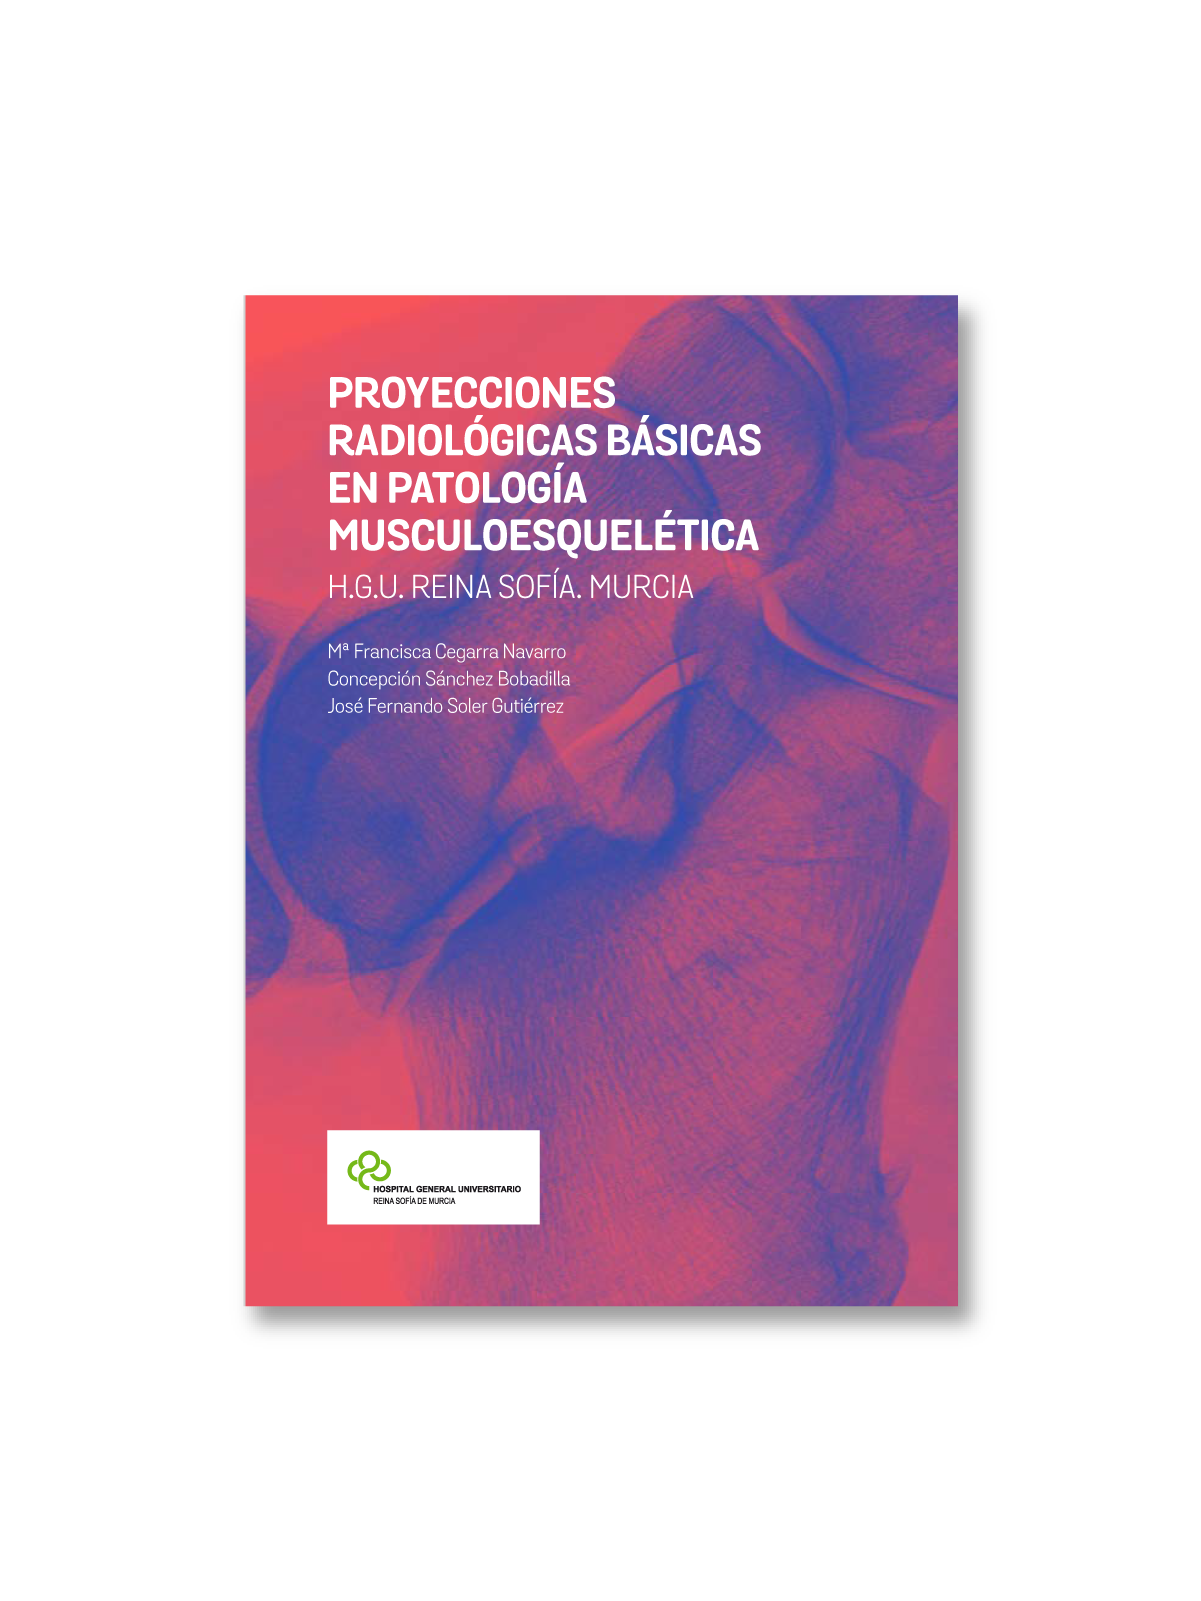 Proyecciones radiológicas básicas book